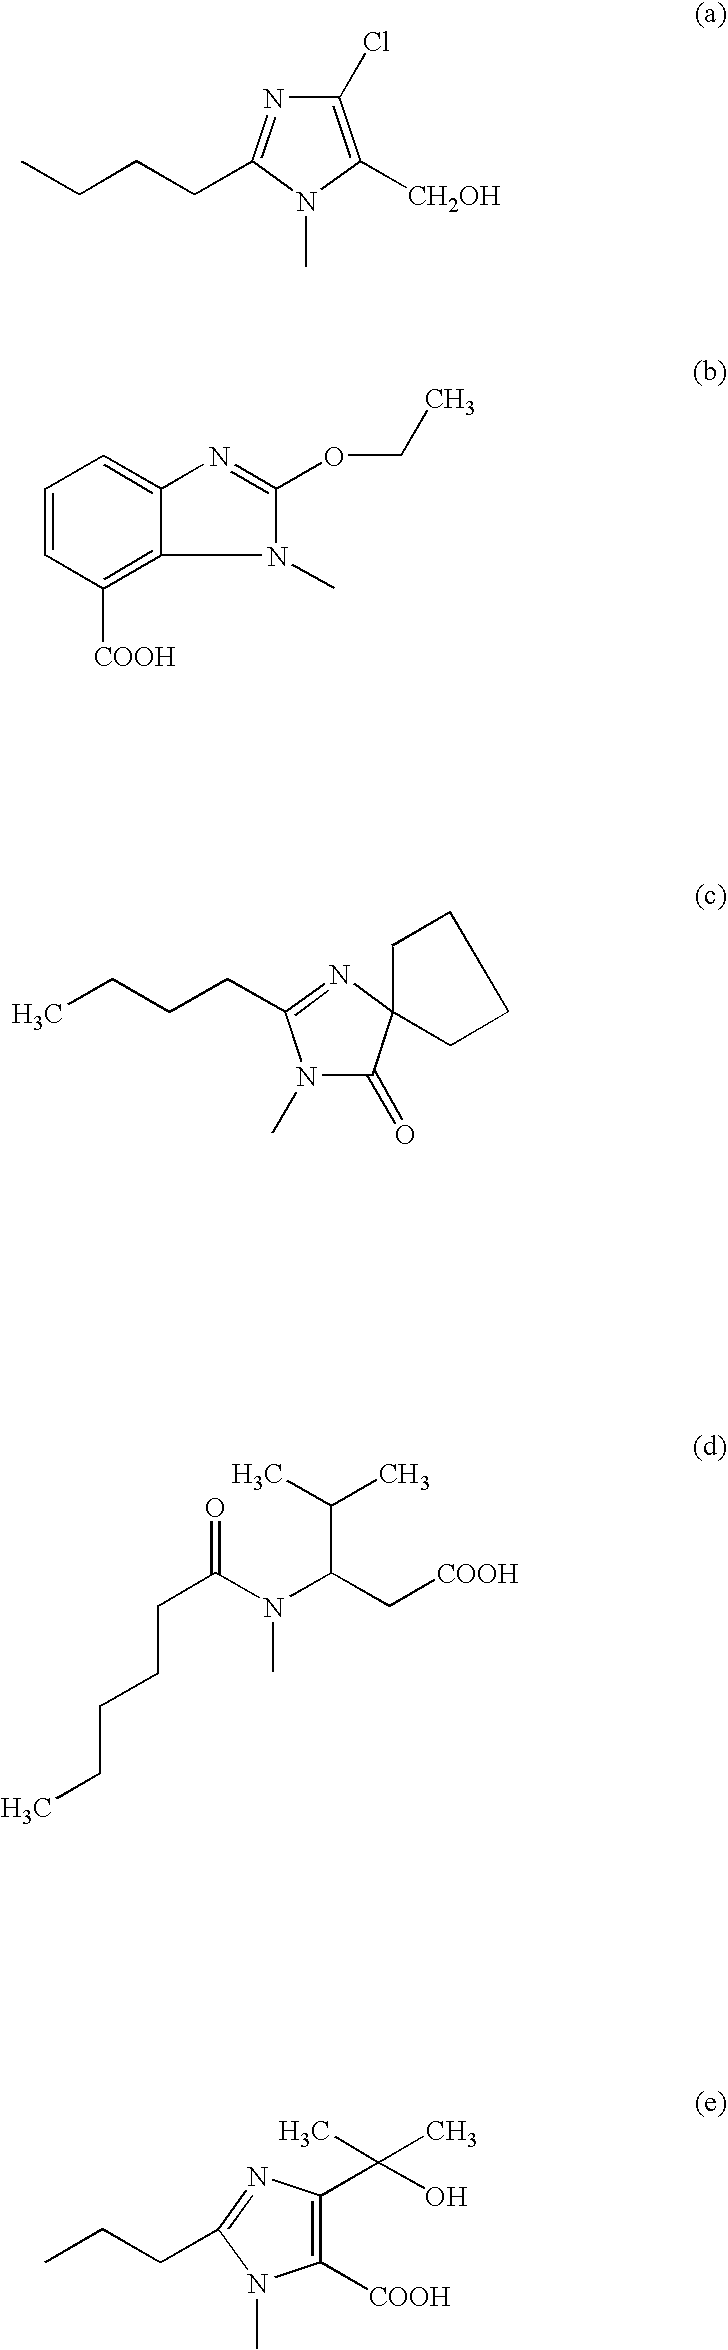 Phenyltetrazole compounds